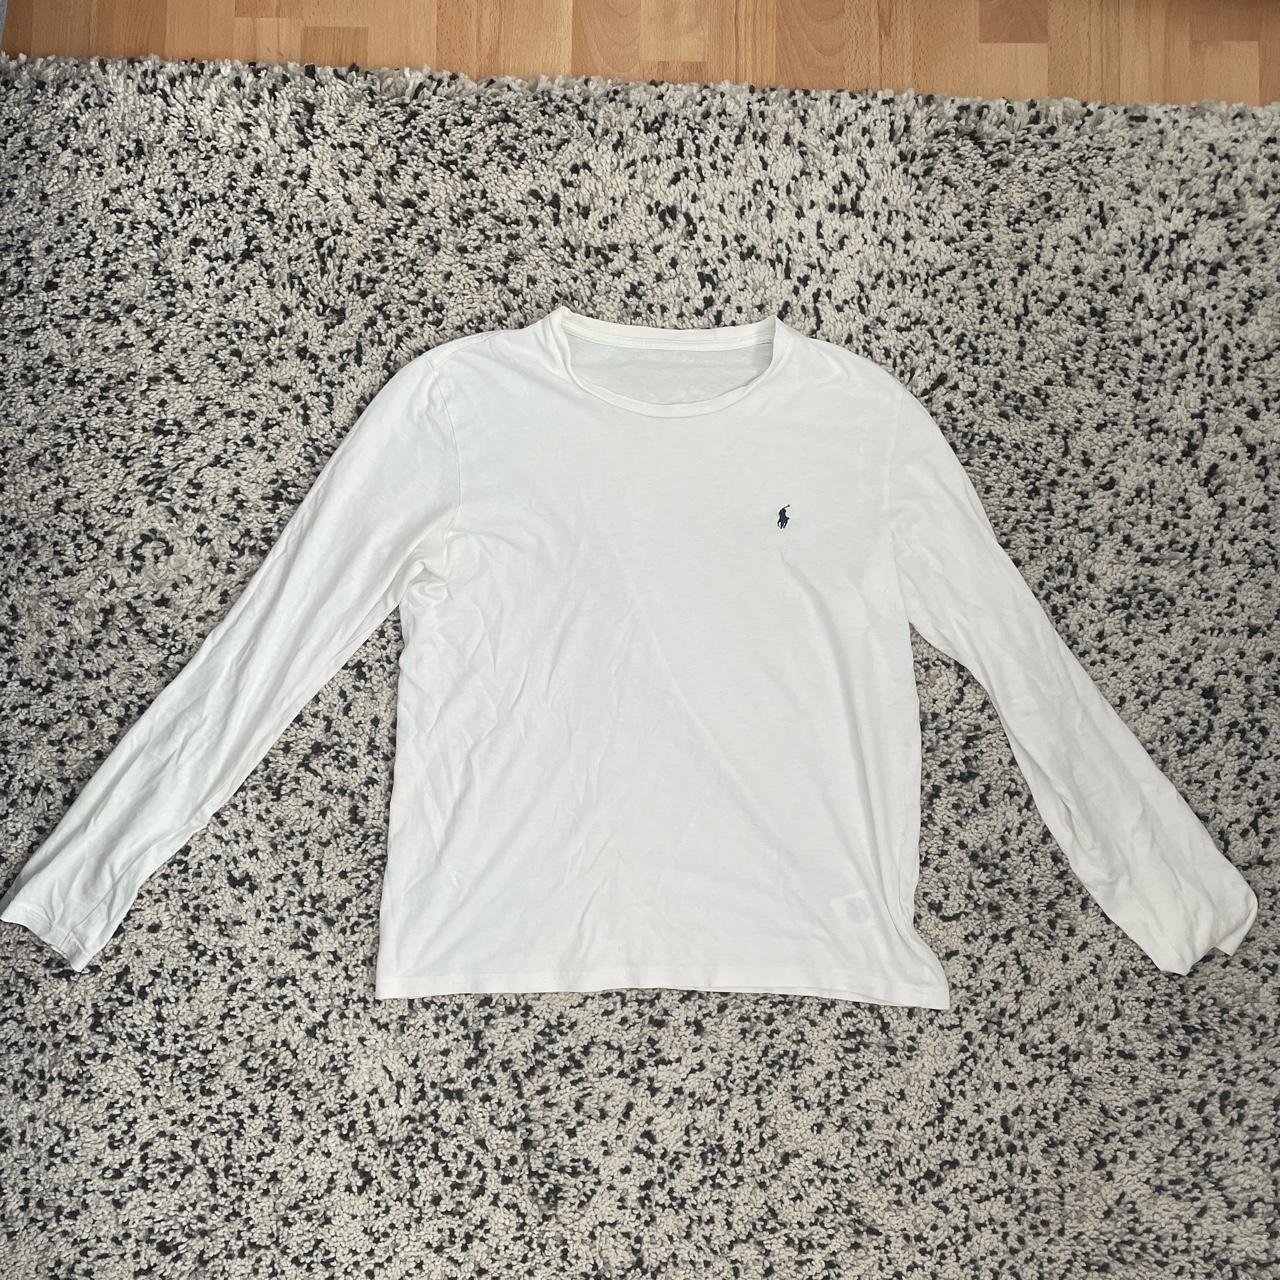 White Ralph Lauren Longsleeve T shirt Small Great... - Depop